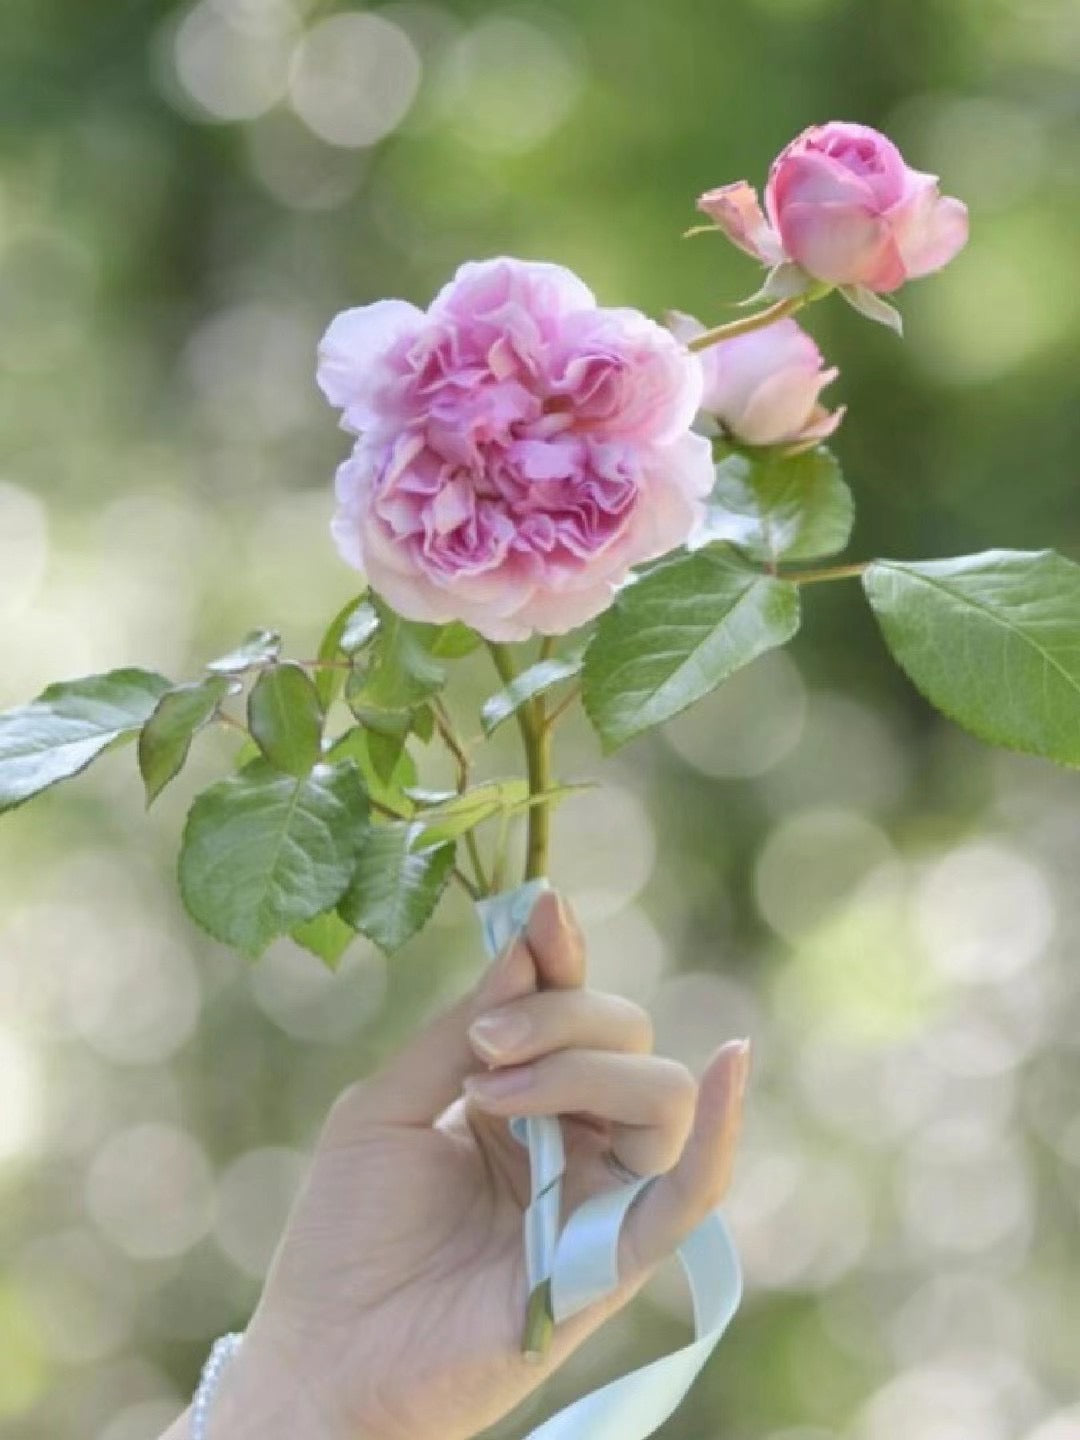 Rare Rose【Rose Antoinette｜ローズ・アントワネット】-1 Gal+ OwnRoot BareRoot｜绝代艳后| Sport of Pompadour |木立バラ| Redolent| Floribunda Rose|